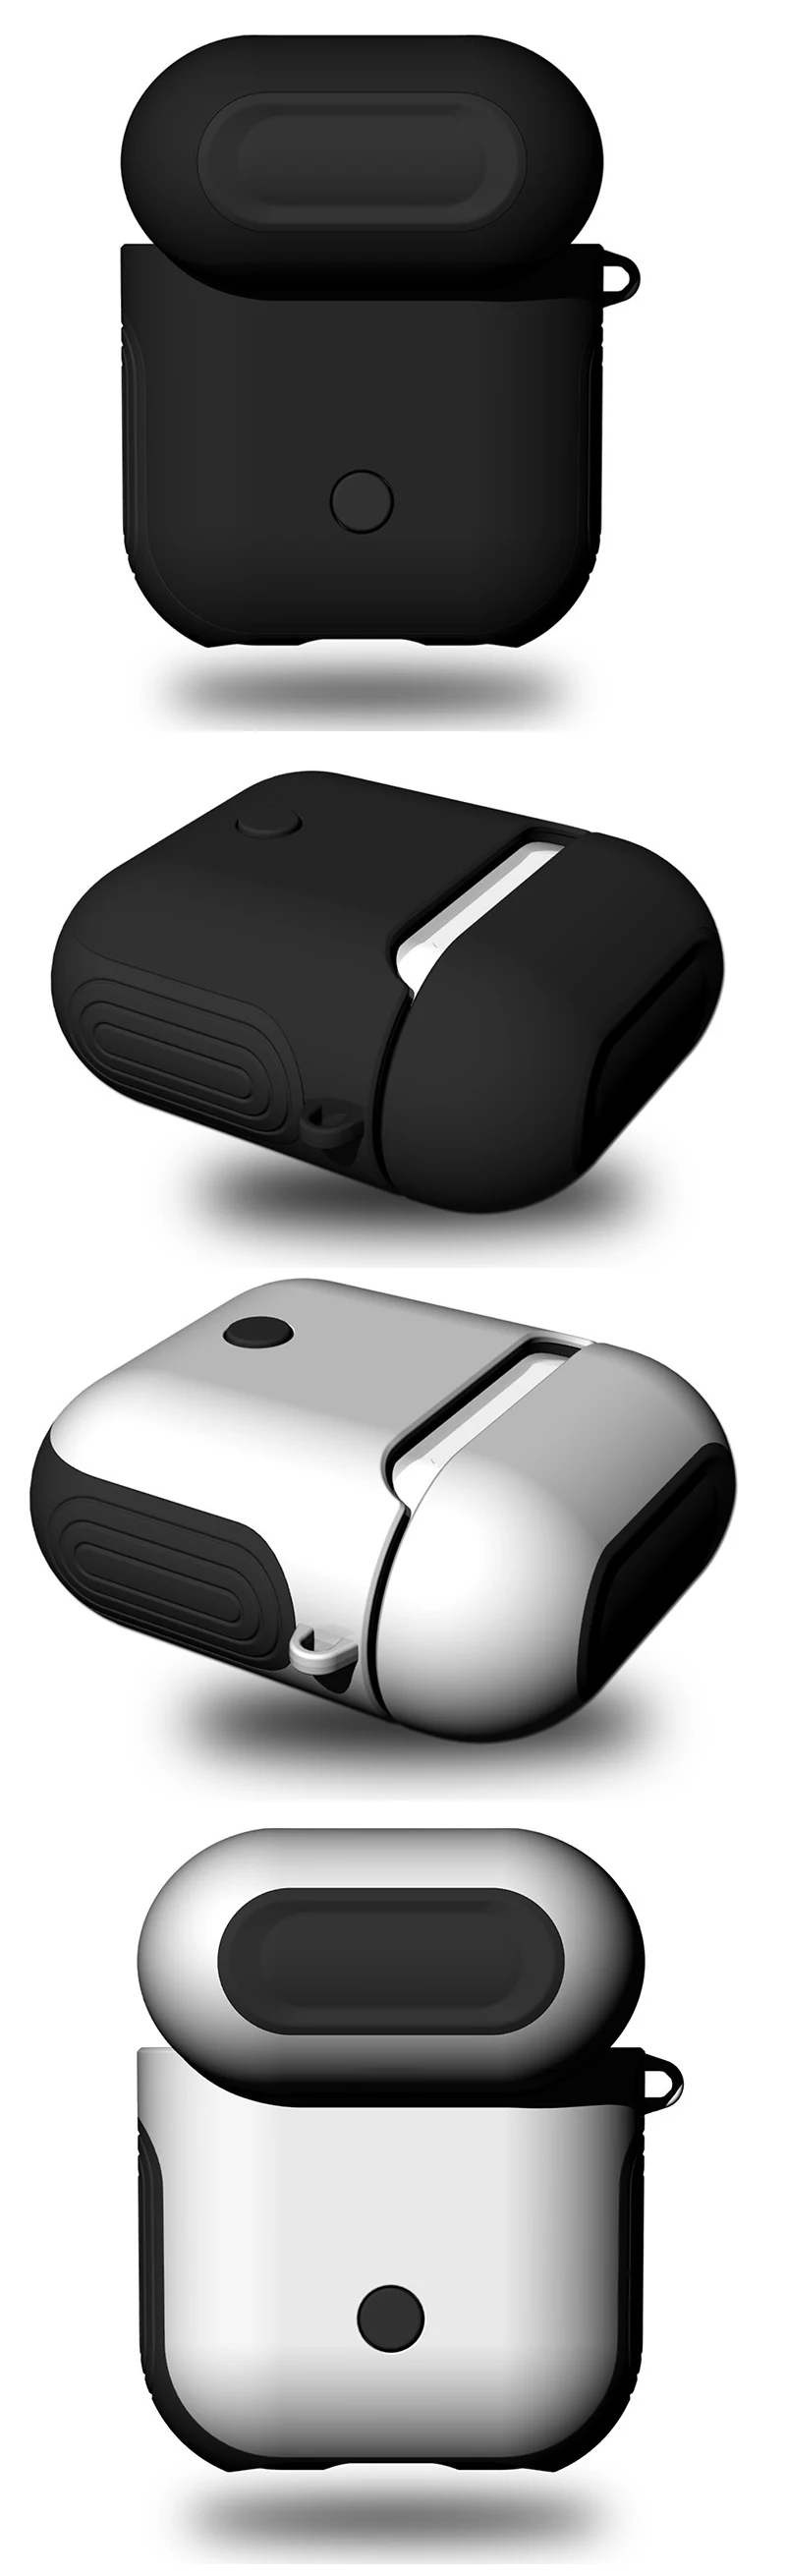 Чехол для наушников Apple AirPods чехол для истинных беспроводных Bluetooth наушников Air Pods чехол Защитный AirPod аксессуары